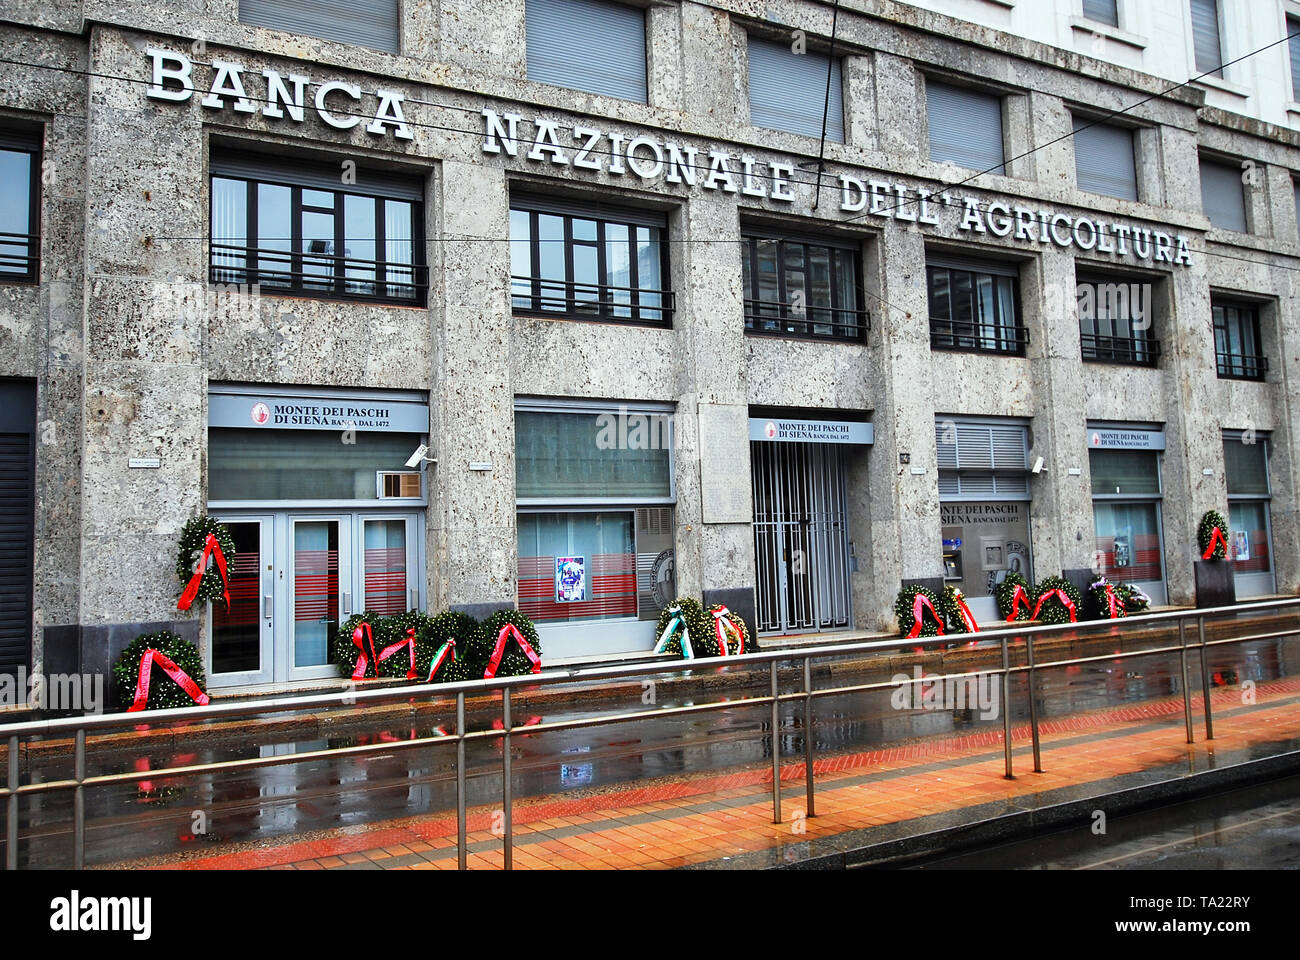 Banca Nazionale dell'Agricoltura Gebäude, die in der terroristischen Bombenanschlag in Piazza Fontana, die am 12. Dezember 1969 durchgeführt wurde. Mailand, Italien Stockfoto